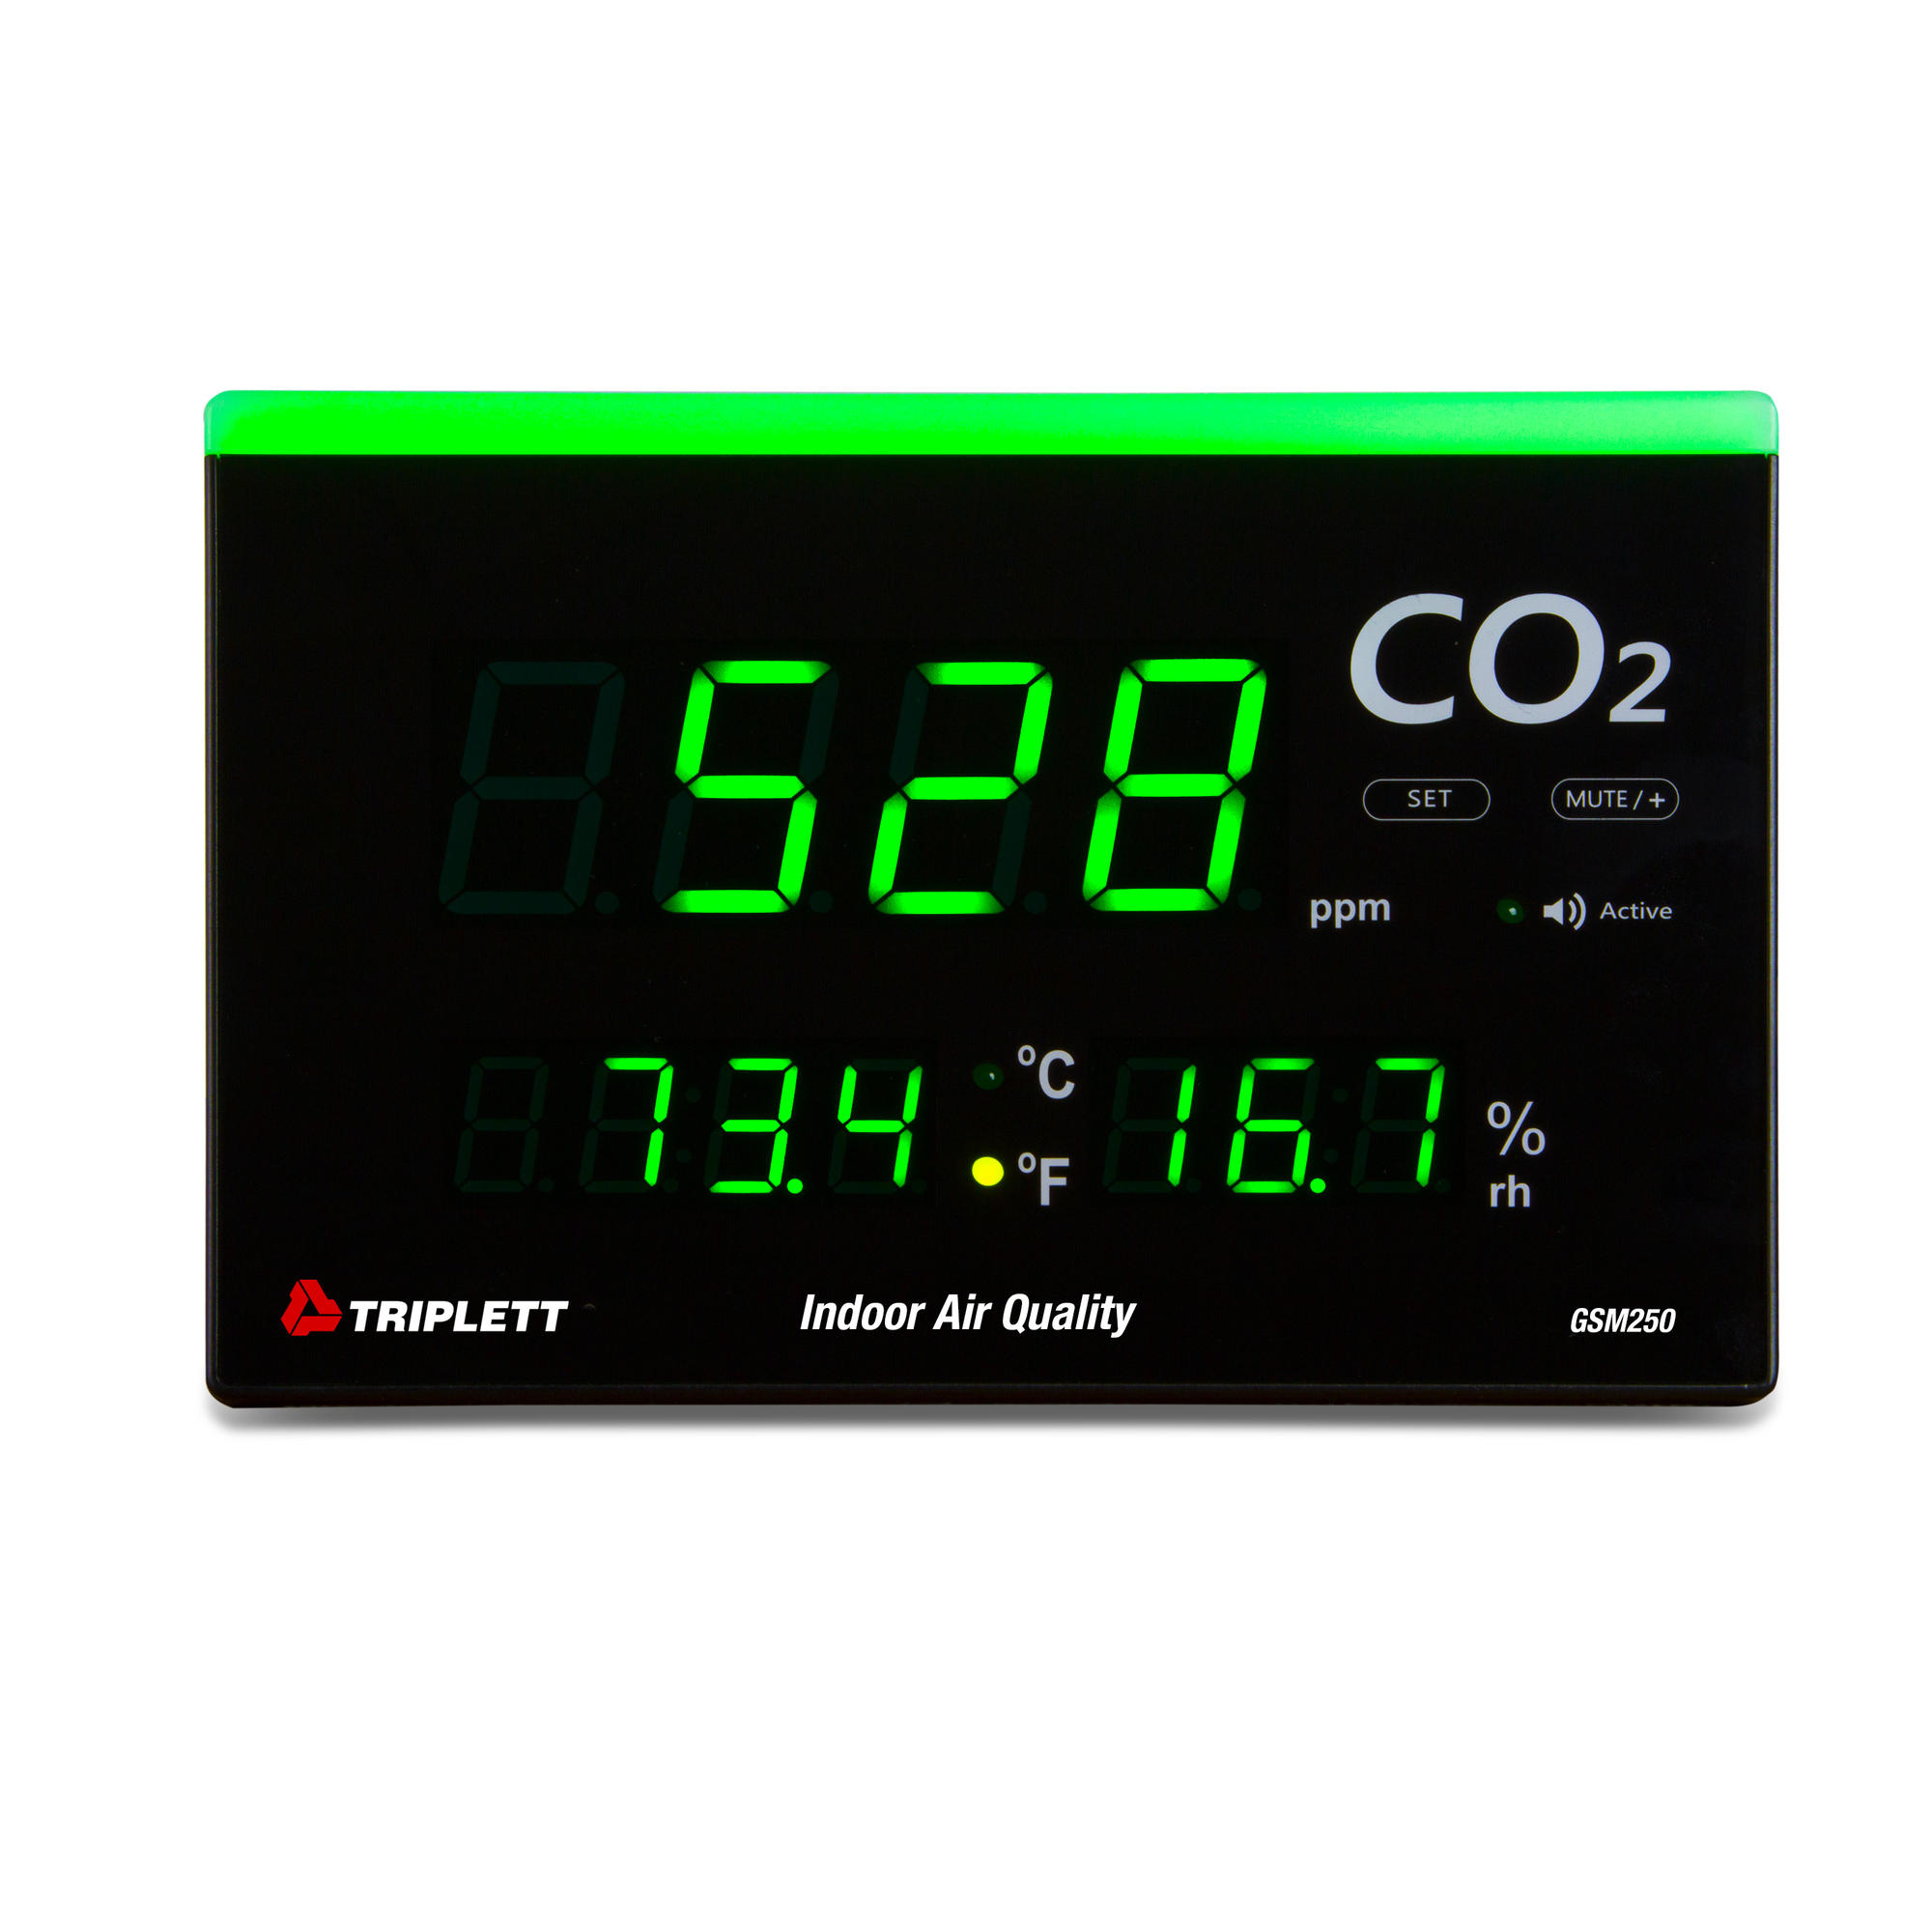 Triplett, CO2 Monitor, Model GSM250